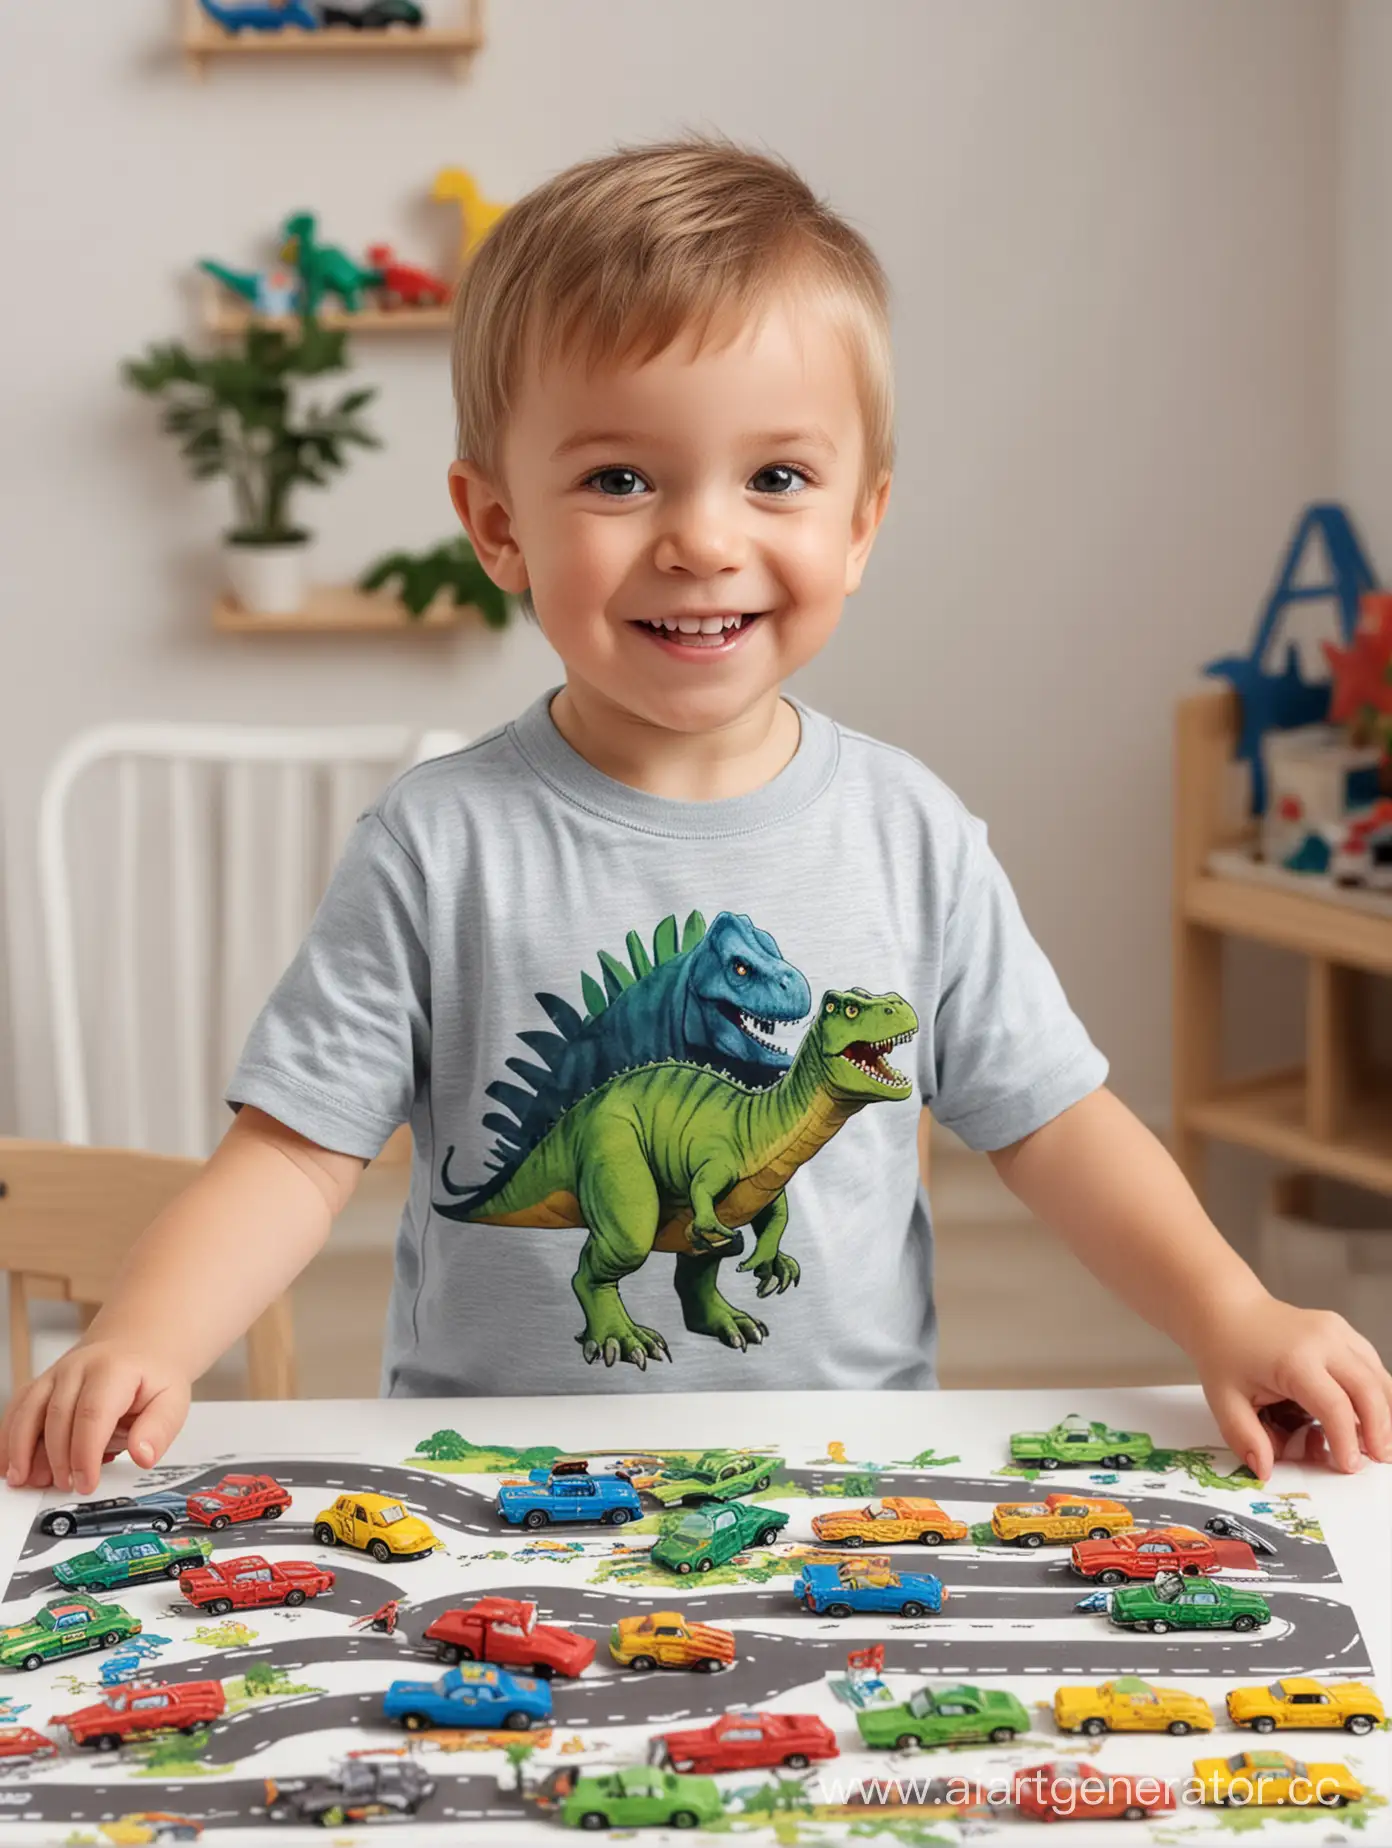 Joyful-Boy-Playing-with-Toy-Cars-in-Dinosaurthemed-Tshirt